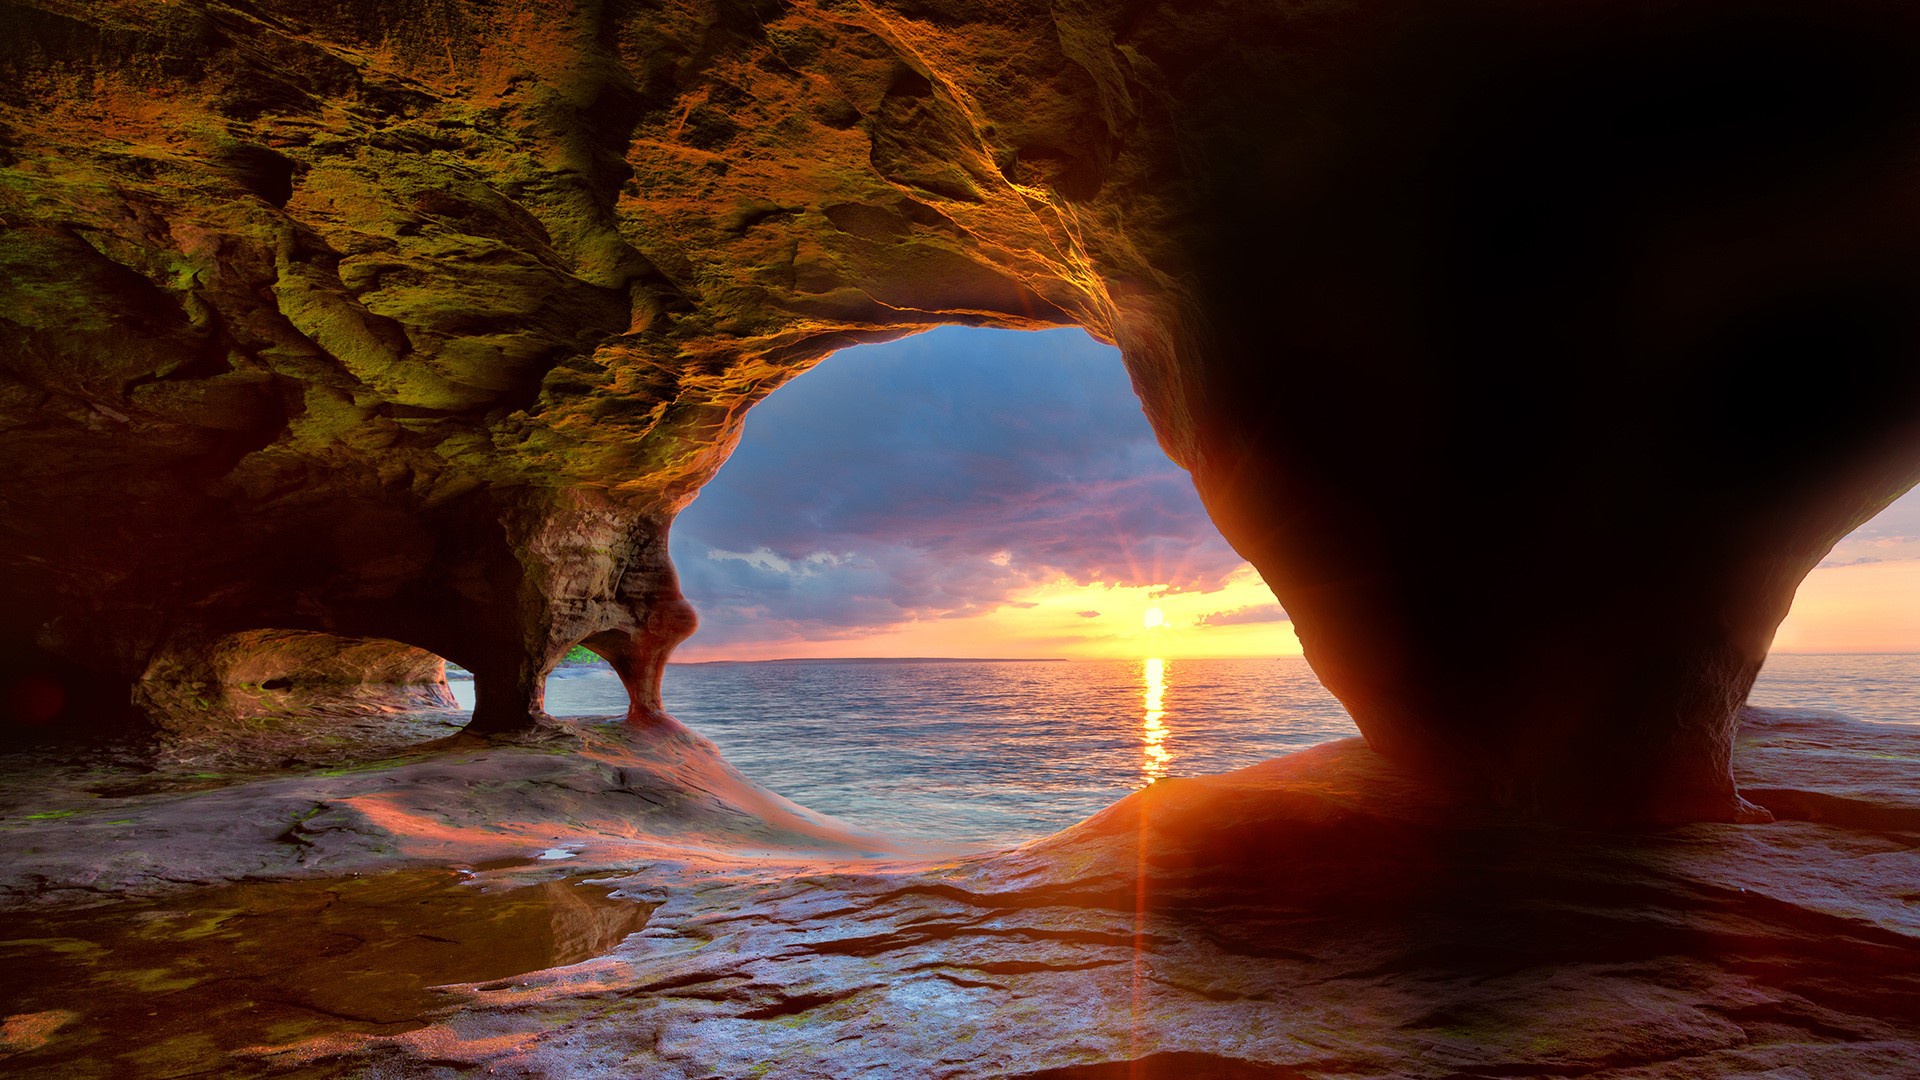 Скачать обои бесплатно Природа, Пещеры, Горизонт, Океан, Пещера, Восход Солнца, Земля/природа картинка на рабочий стол ПК